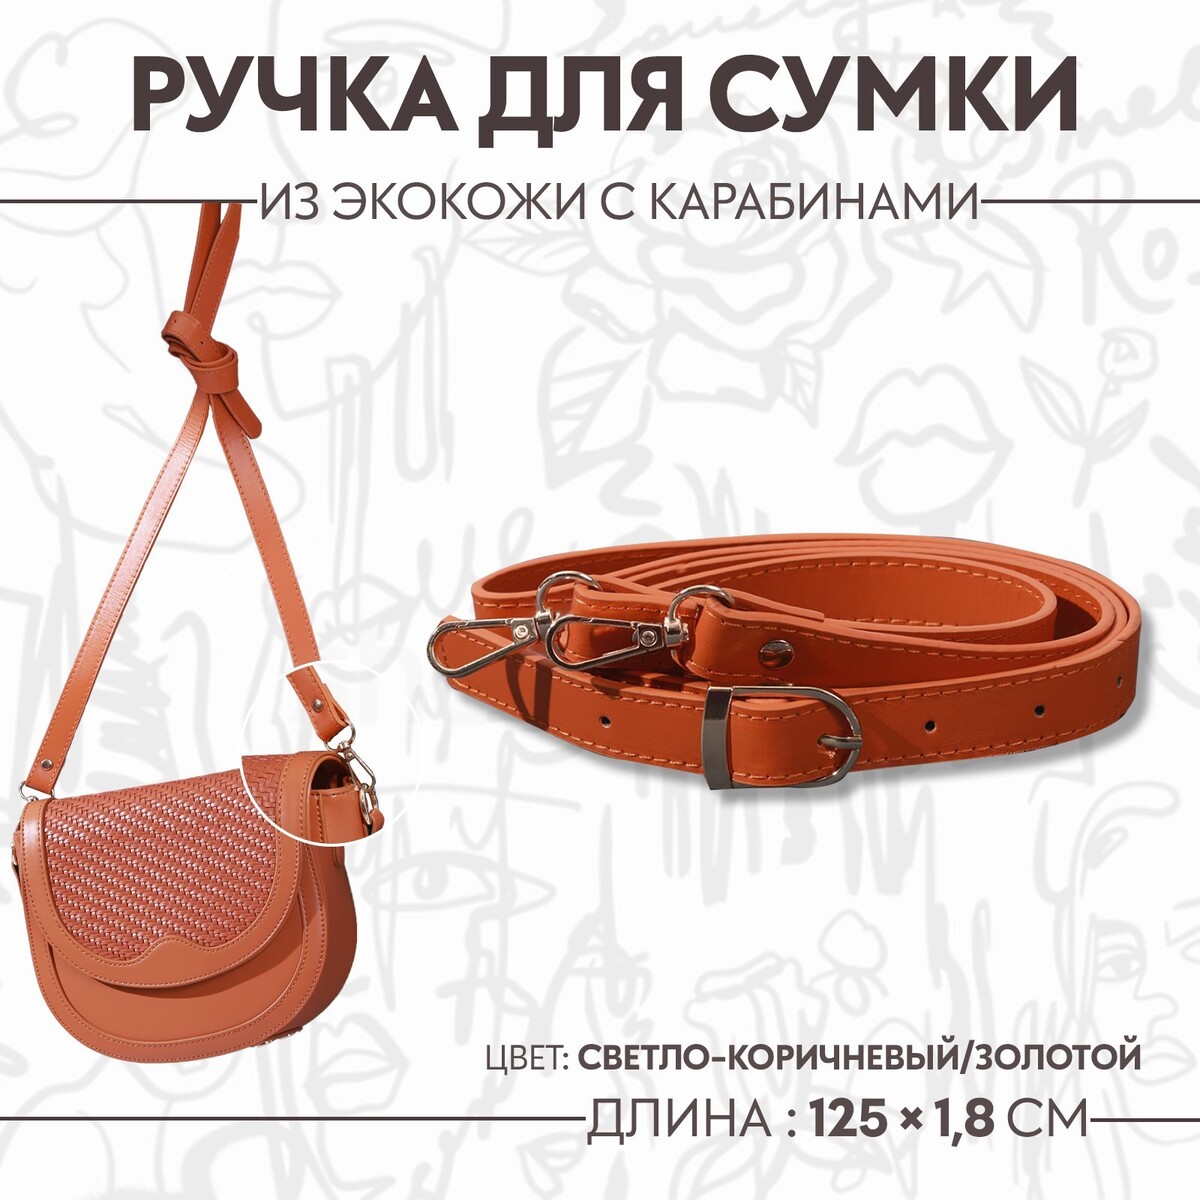 Ручка для сумки из экокожи, с карабинами, 125 × 1,8 см, цвет светло-коричневый юбка женская мини из экокожи в светло коричневом оттенке